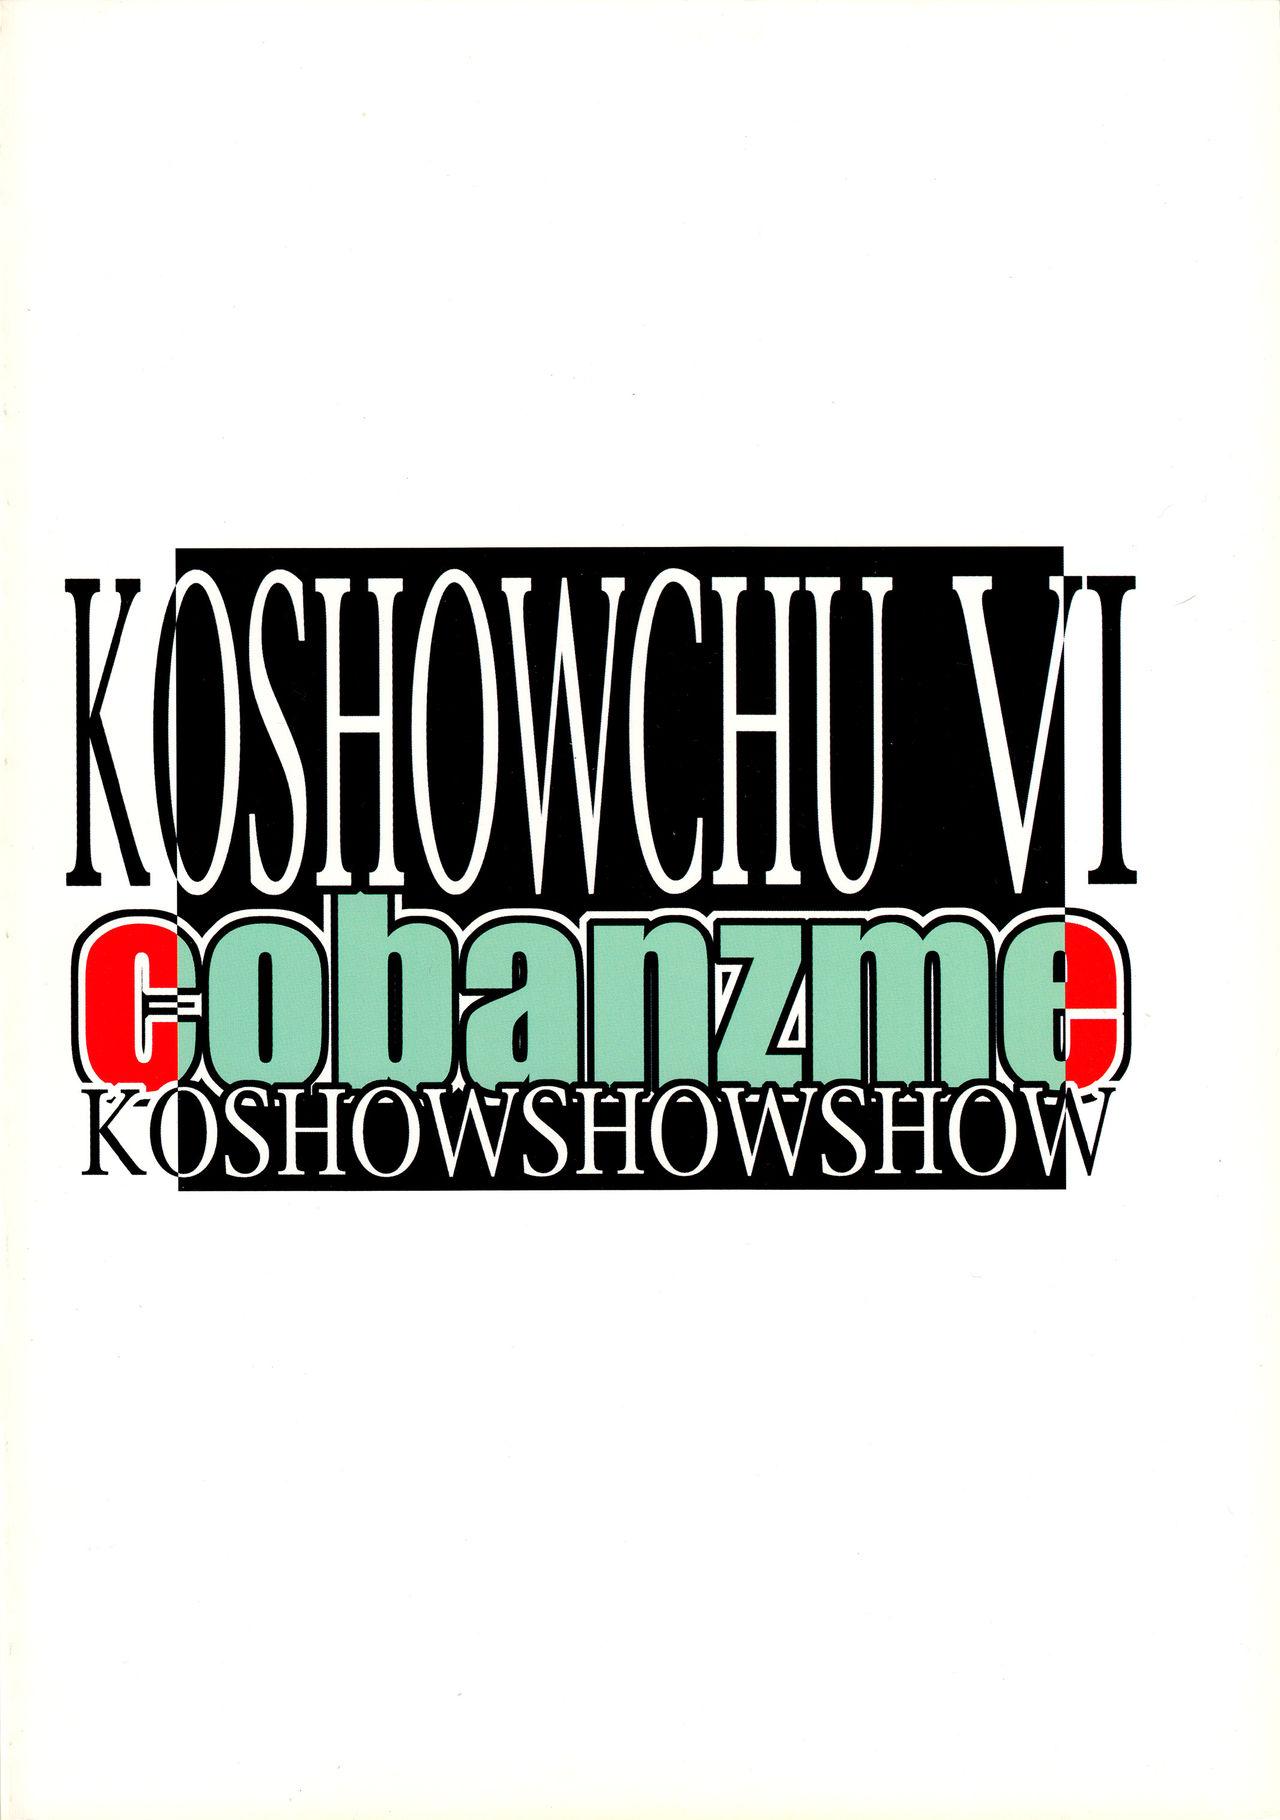 Koshouchuu 6 1